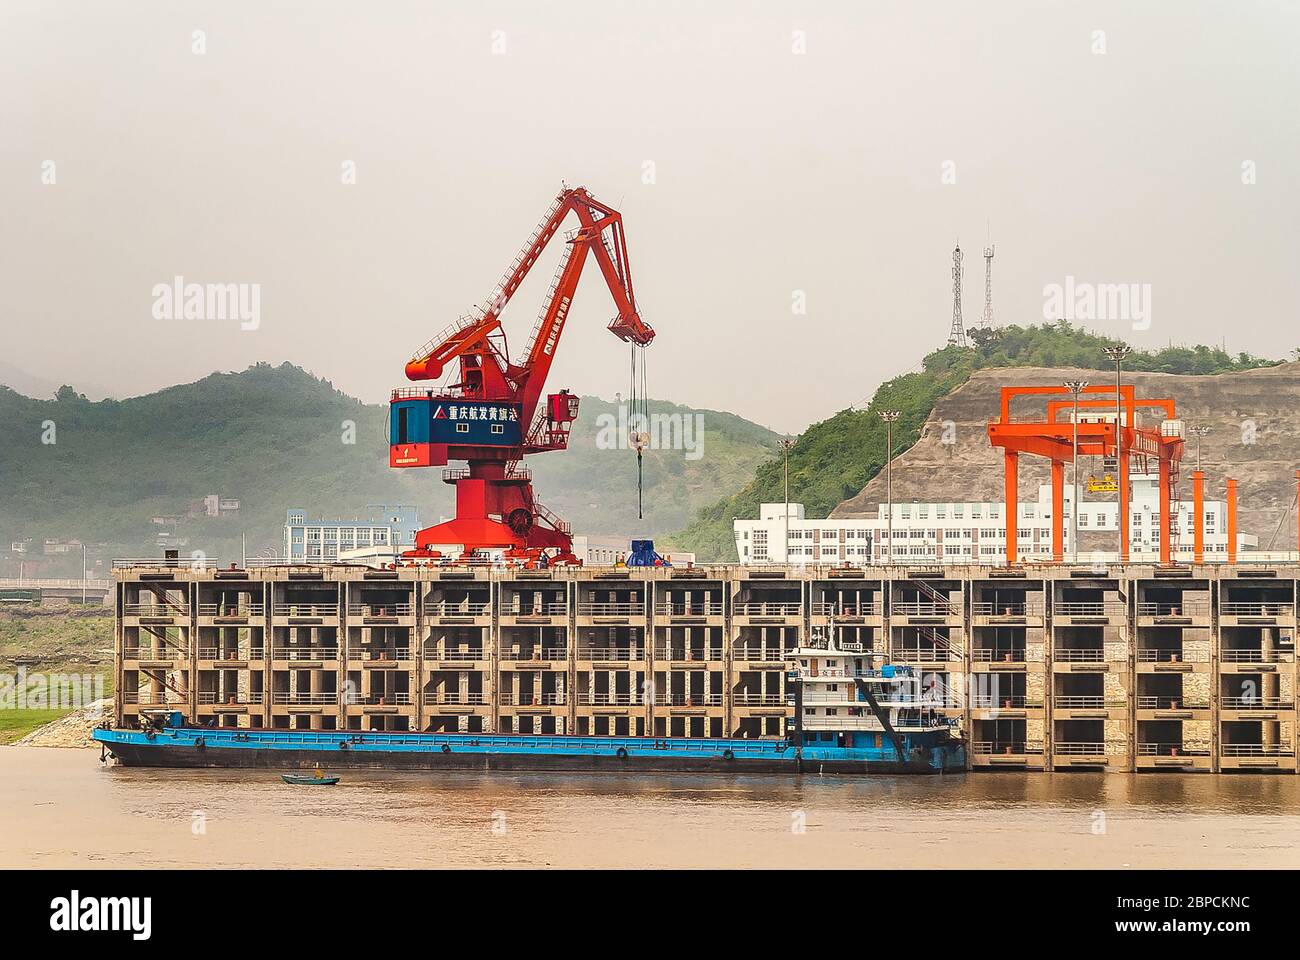 Huangqikou, Chongqing, Chine - 8 mai 2010 : fleuve Yangtze. La grue rouge et bleue décharge la barge bleue au quai à plusieurs niveaux du port. Colline verte sous smog sk Banque D'Images